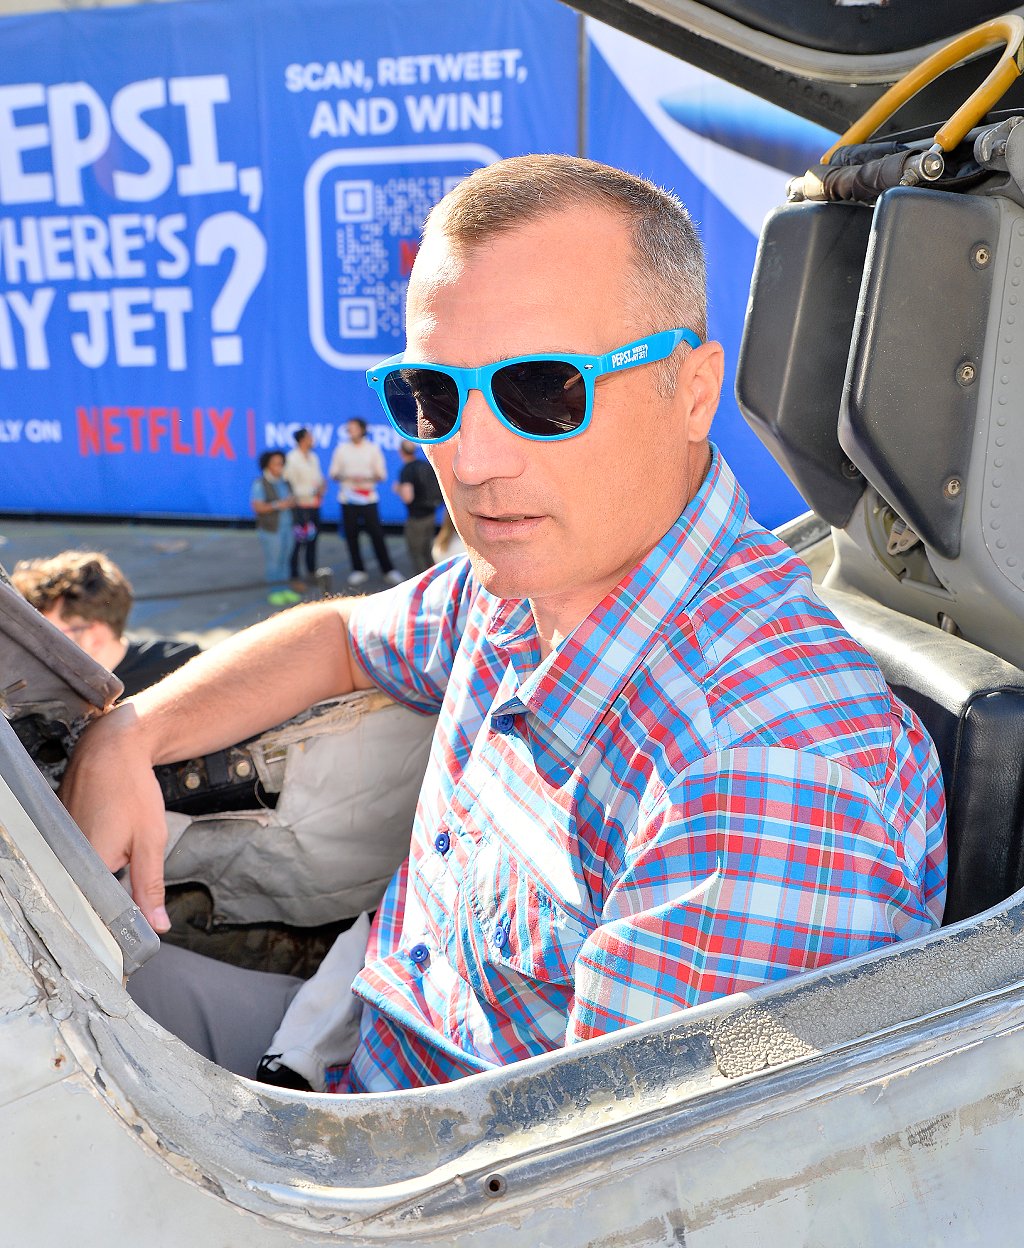 Leonard finalmente a bordo de un Harrier 27 años después, en la promoción del documental "Pepsi, dónde está mi jet".